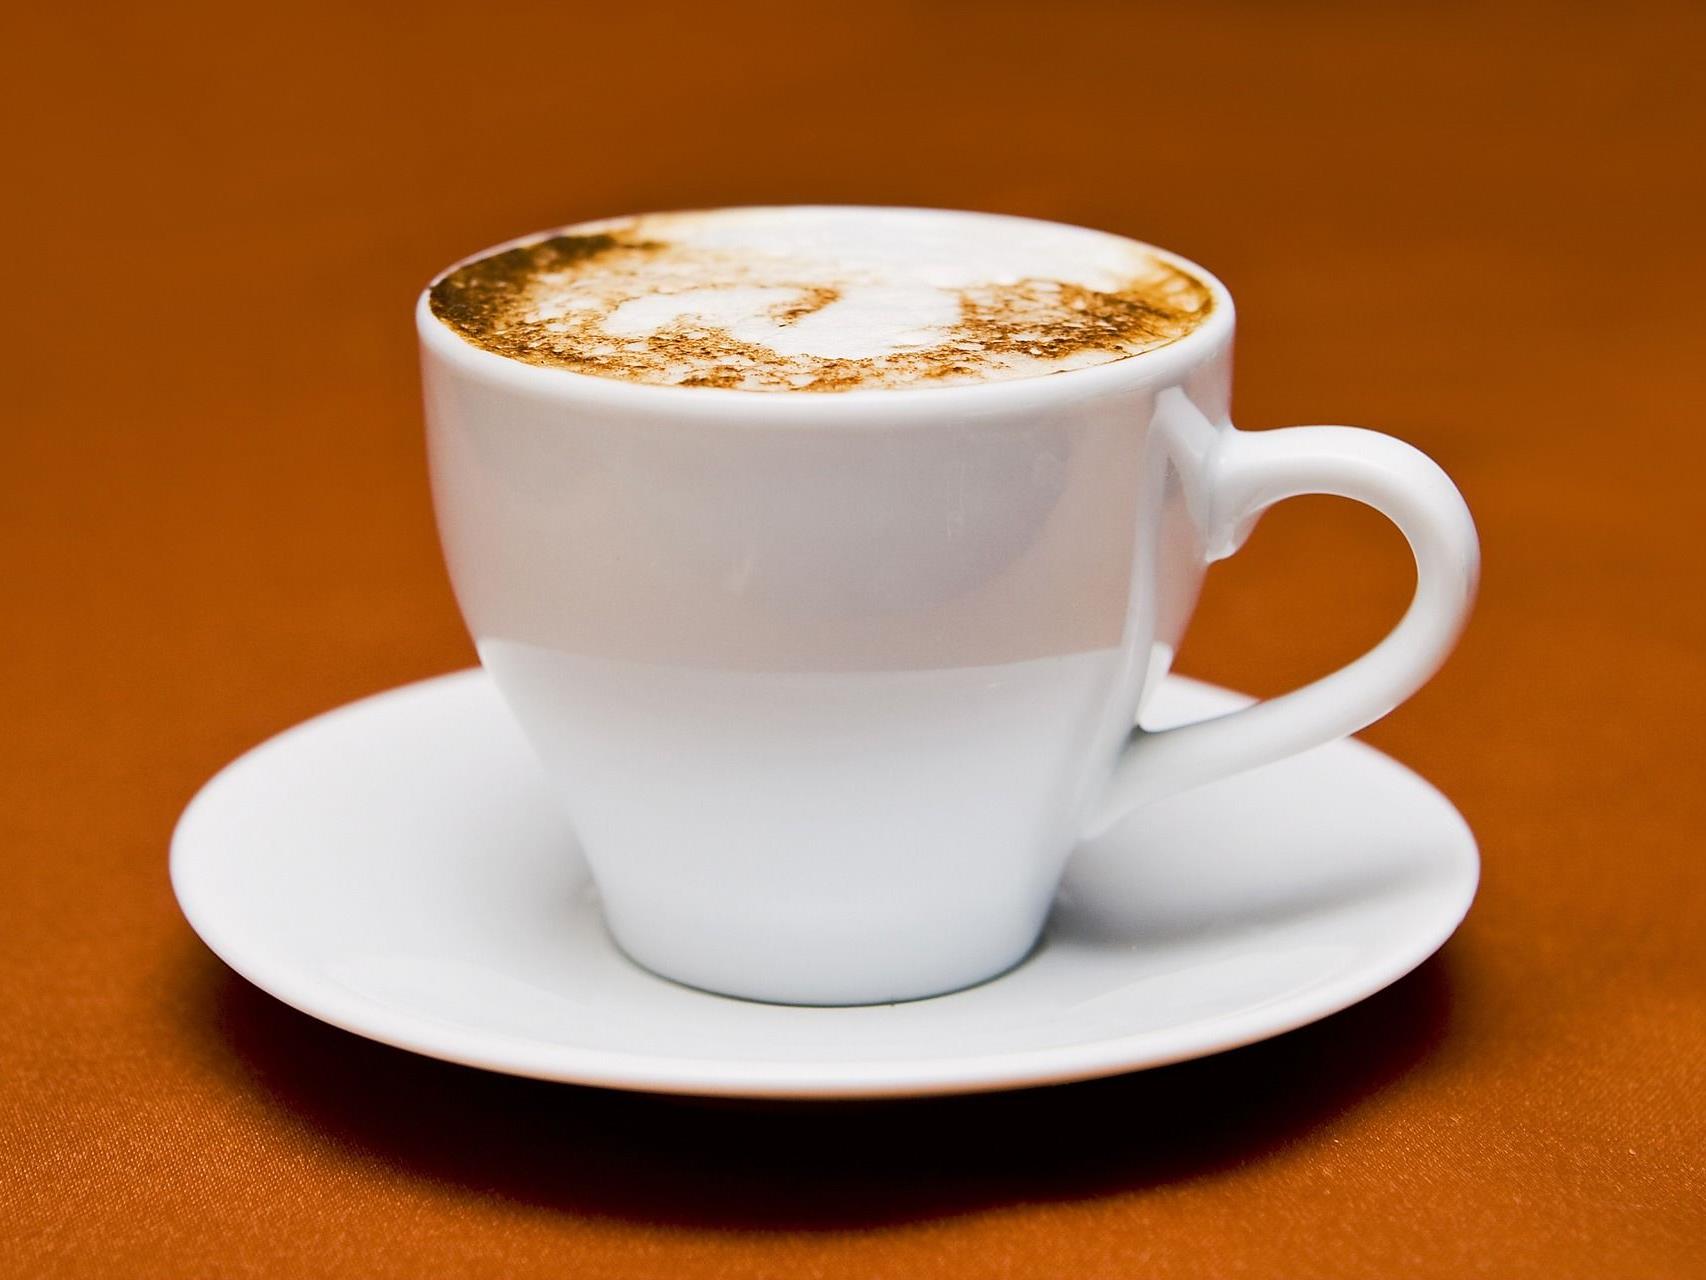 In Cappuccino-Kapseln muss Röstkaffee enthalten sein, entschied das OLG Wien.